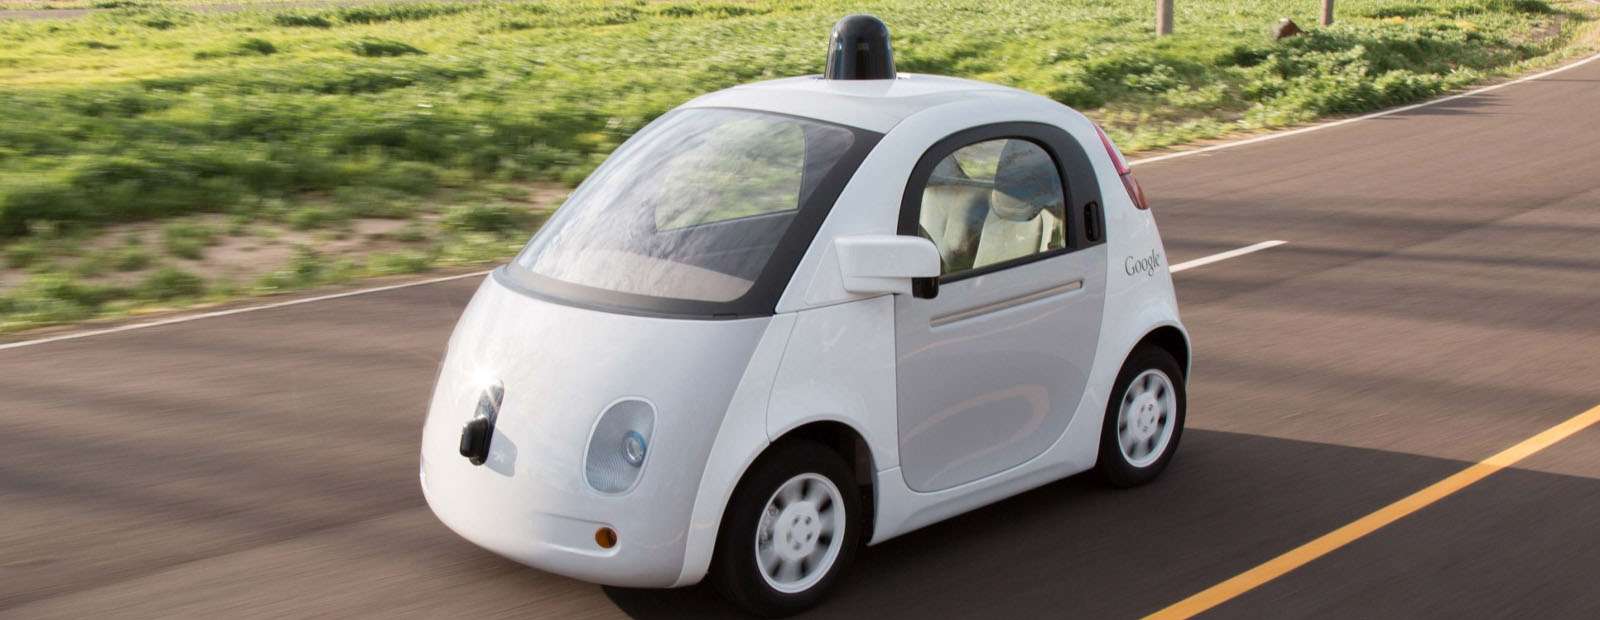 Новий безпілотний автомобіль Google